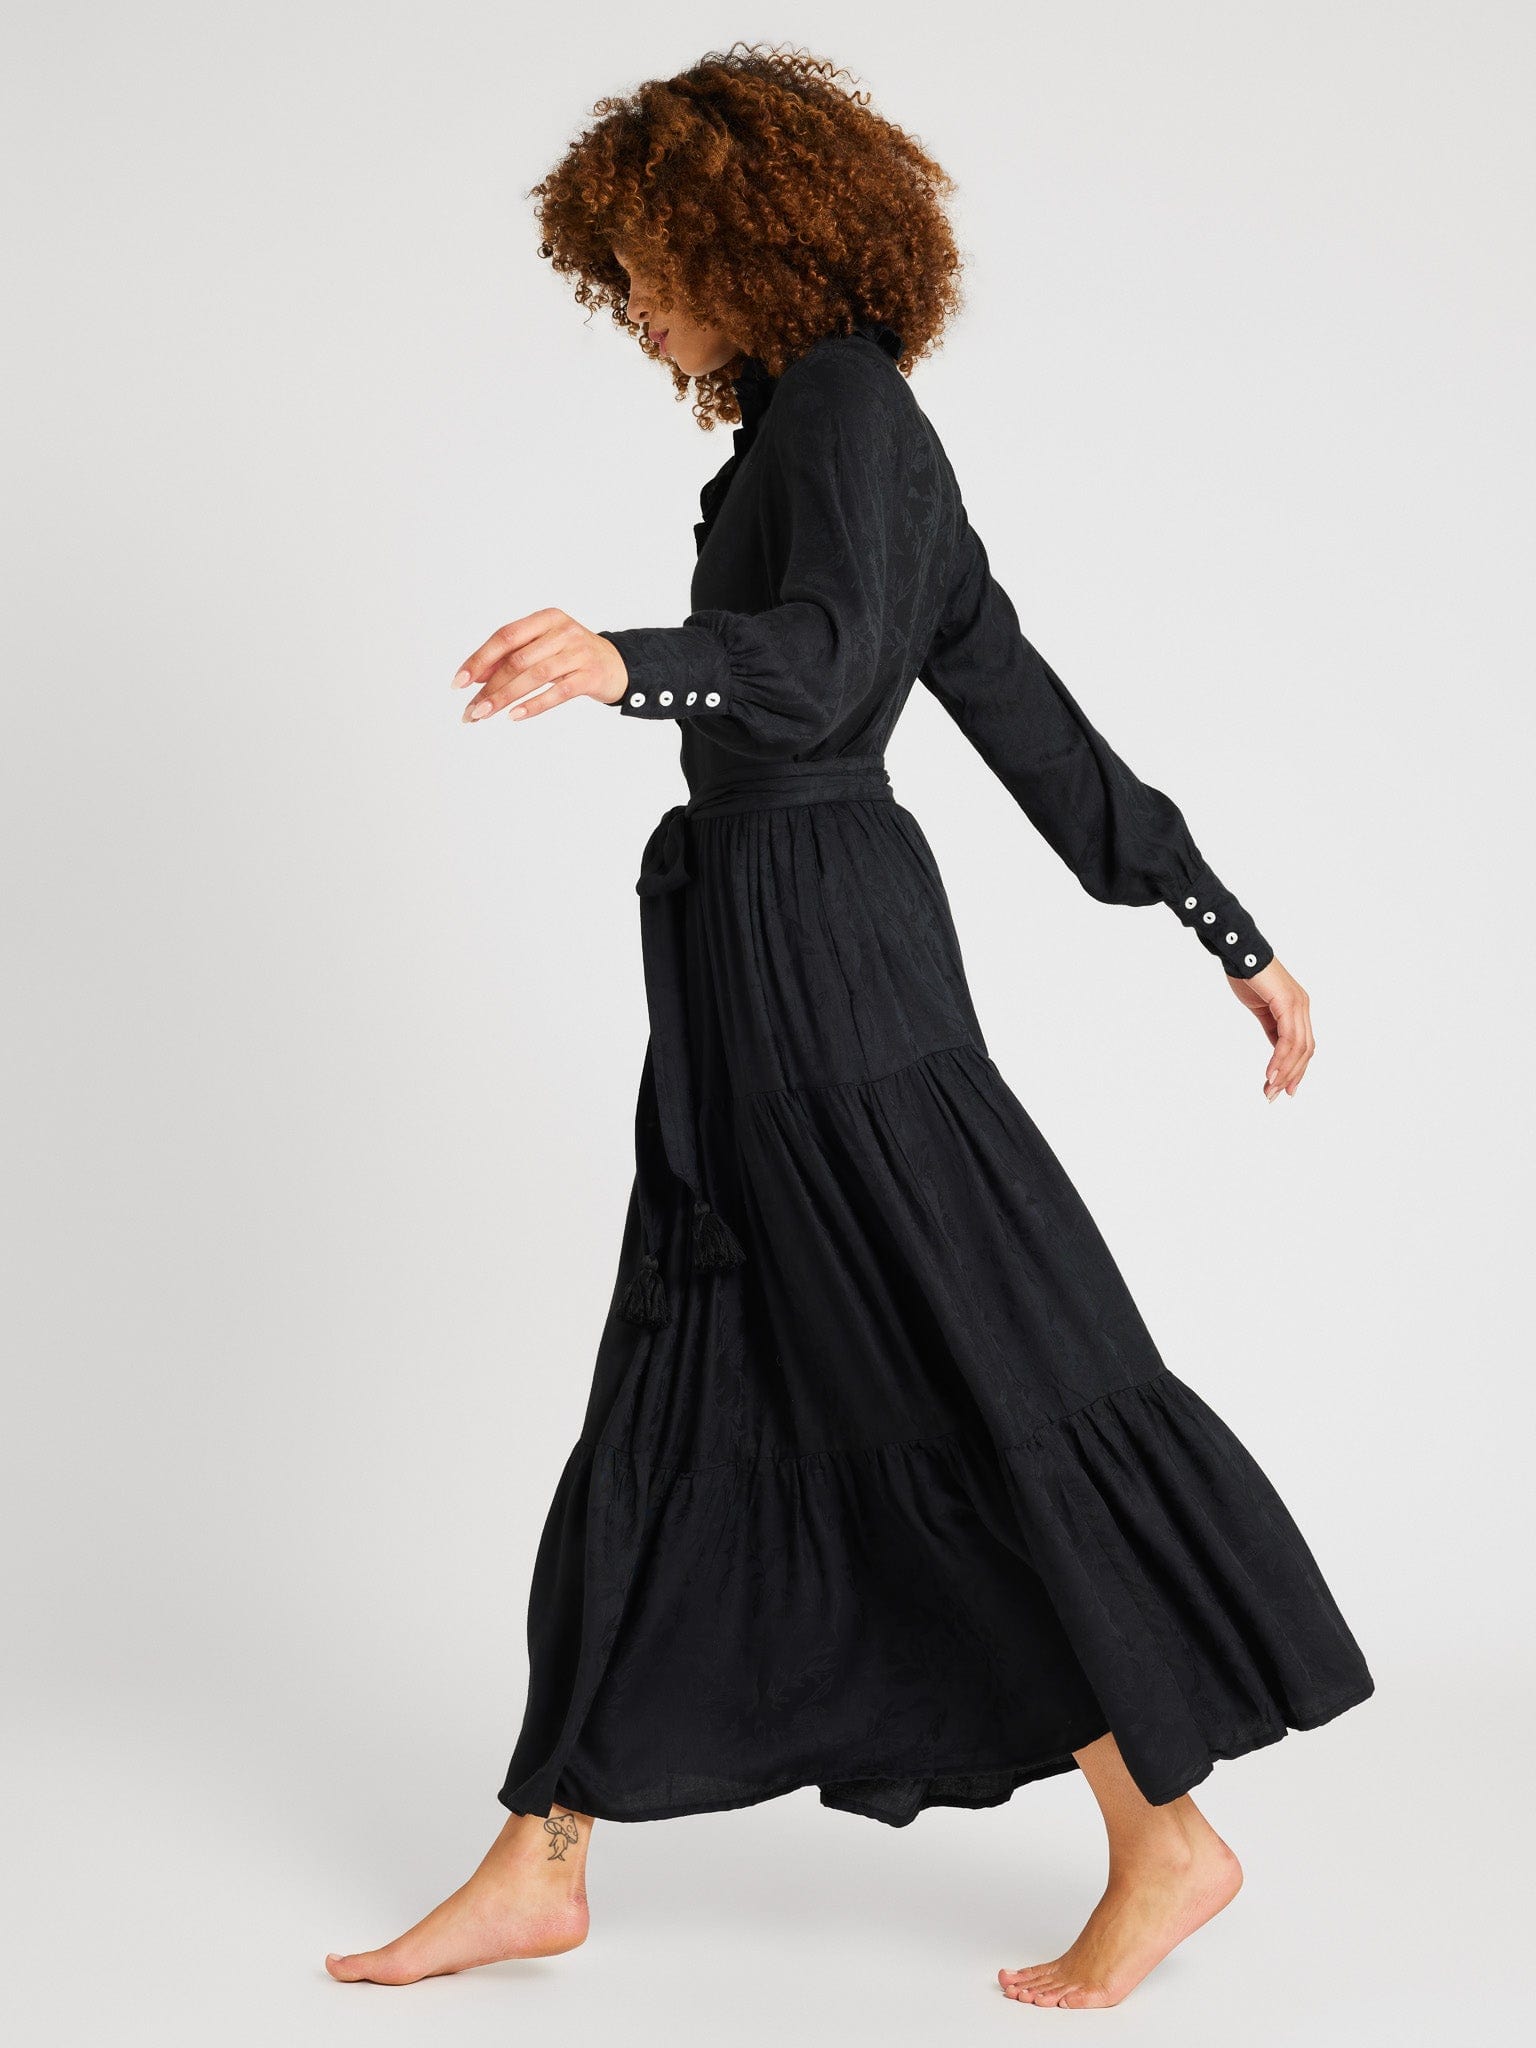 Valentina Dress in Black Jacquard – MILLE